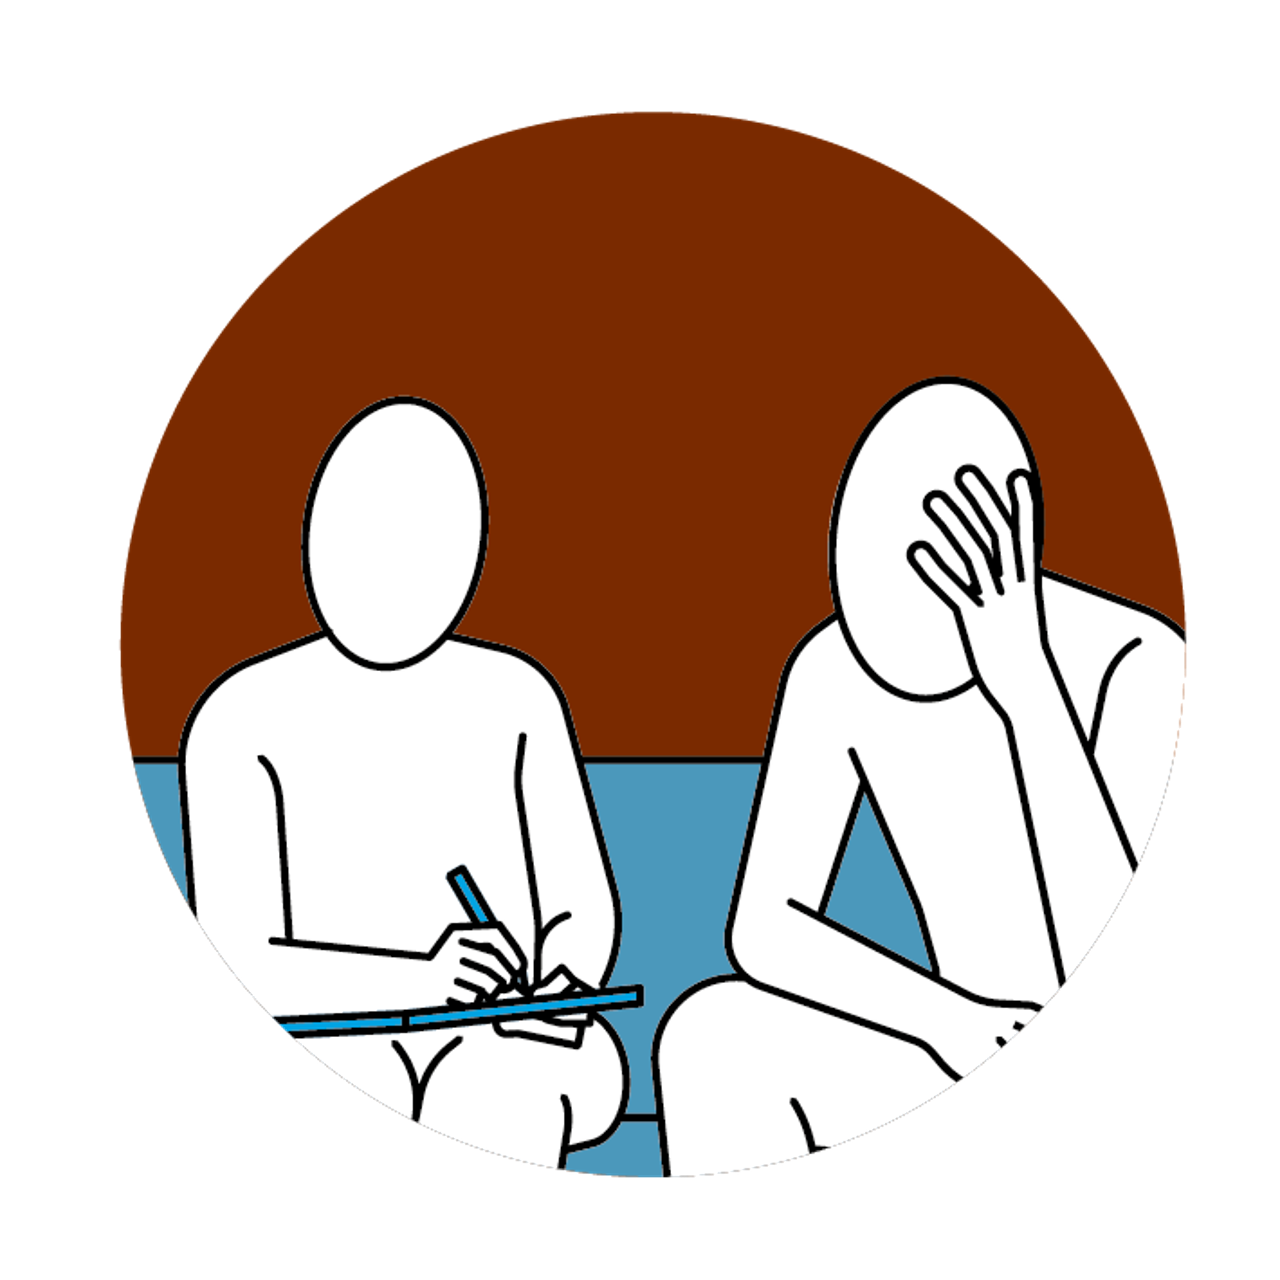 Ein Therapeut, welcher sich Notizen zum Gesagten einer Person macht, die vor ihm auf einem Sofa sitzt und seinen Kopf in seiner Hand abstützt.